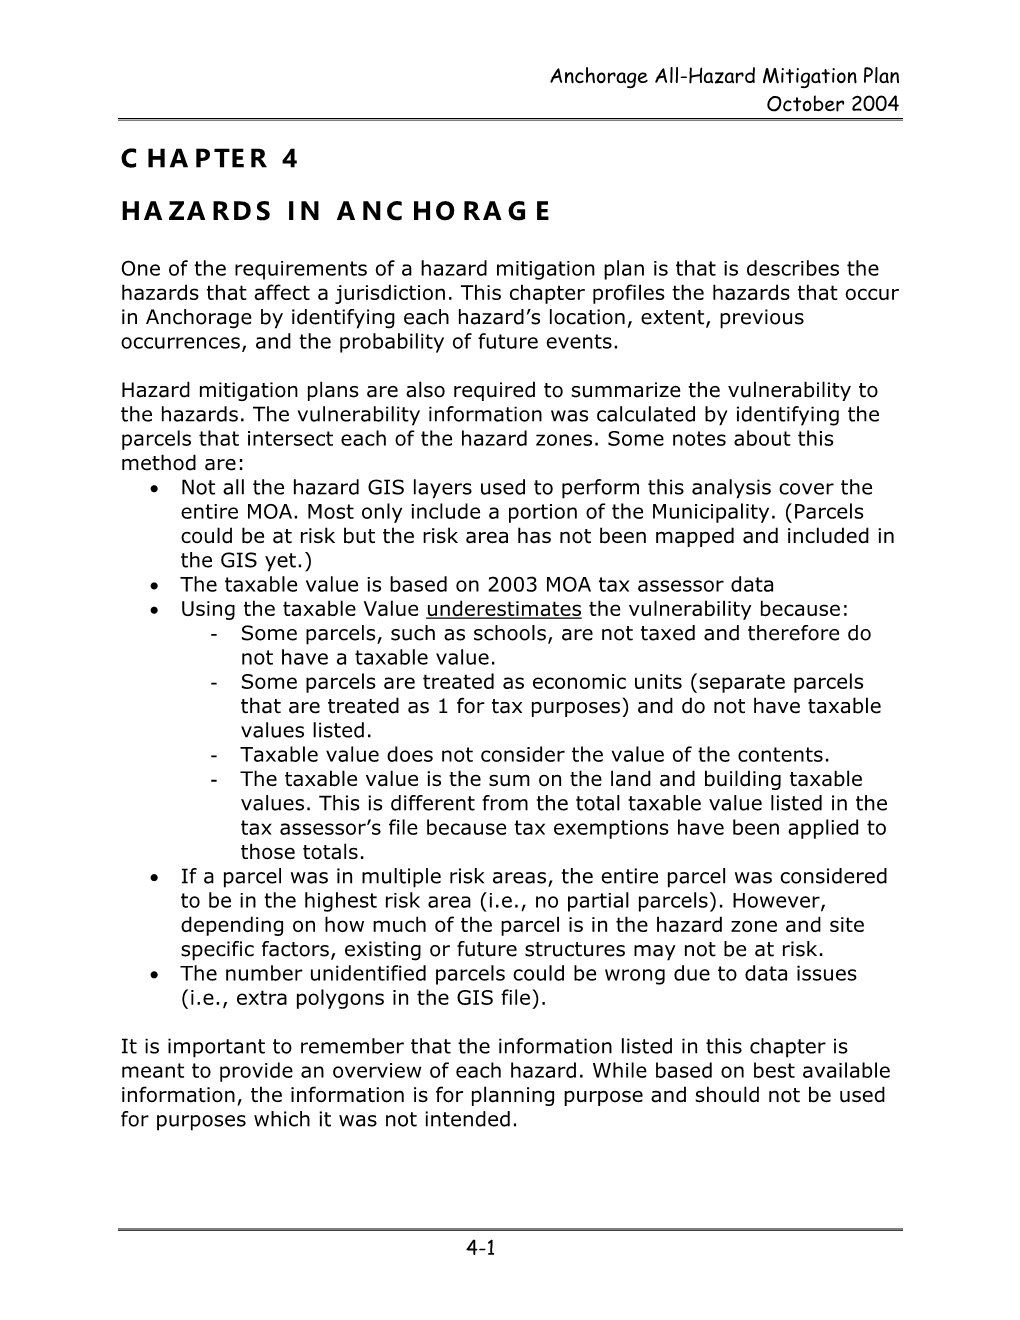 Chapter 4 Hazards in Anchorage